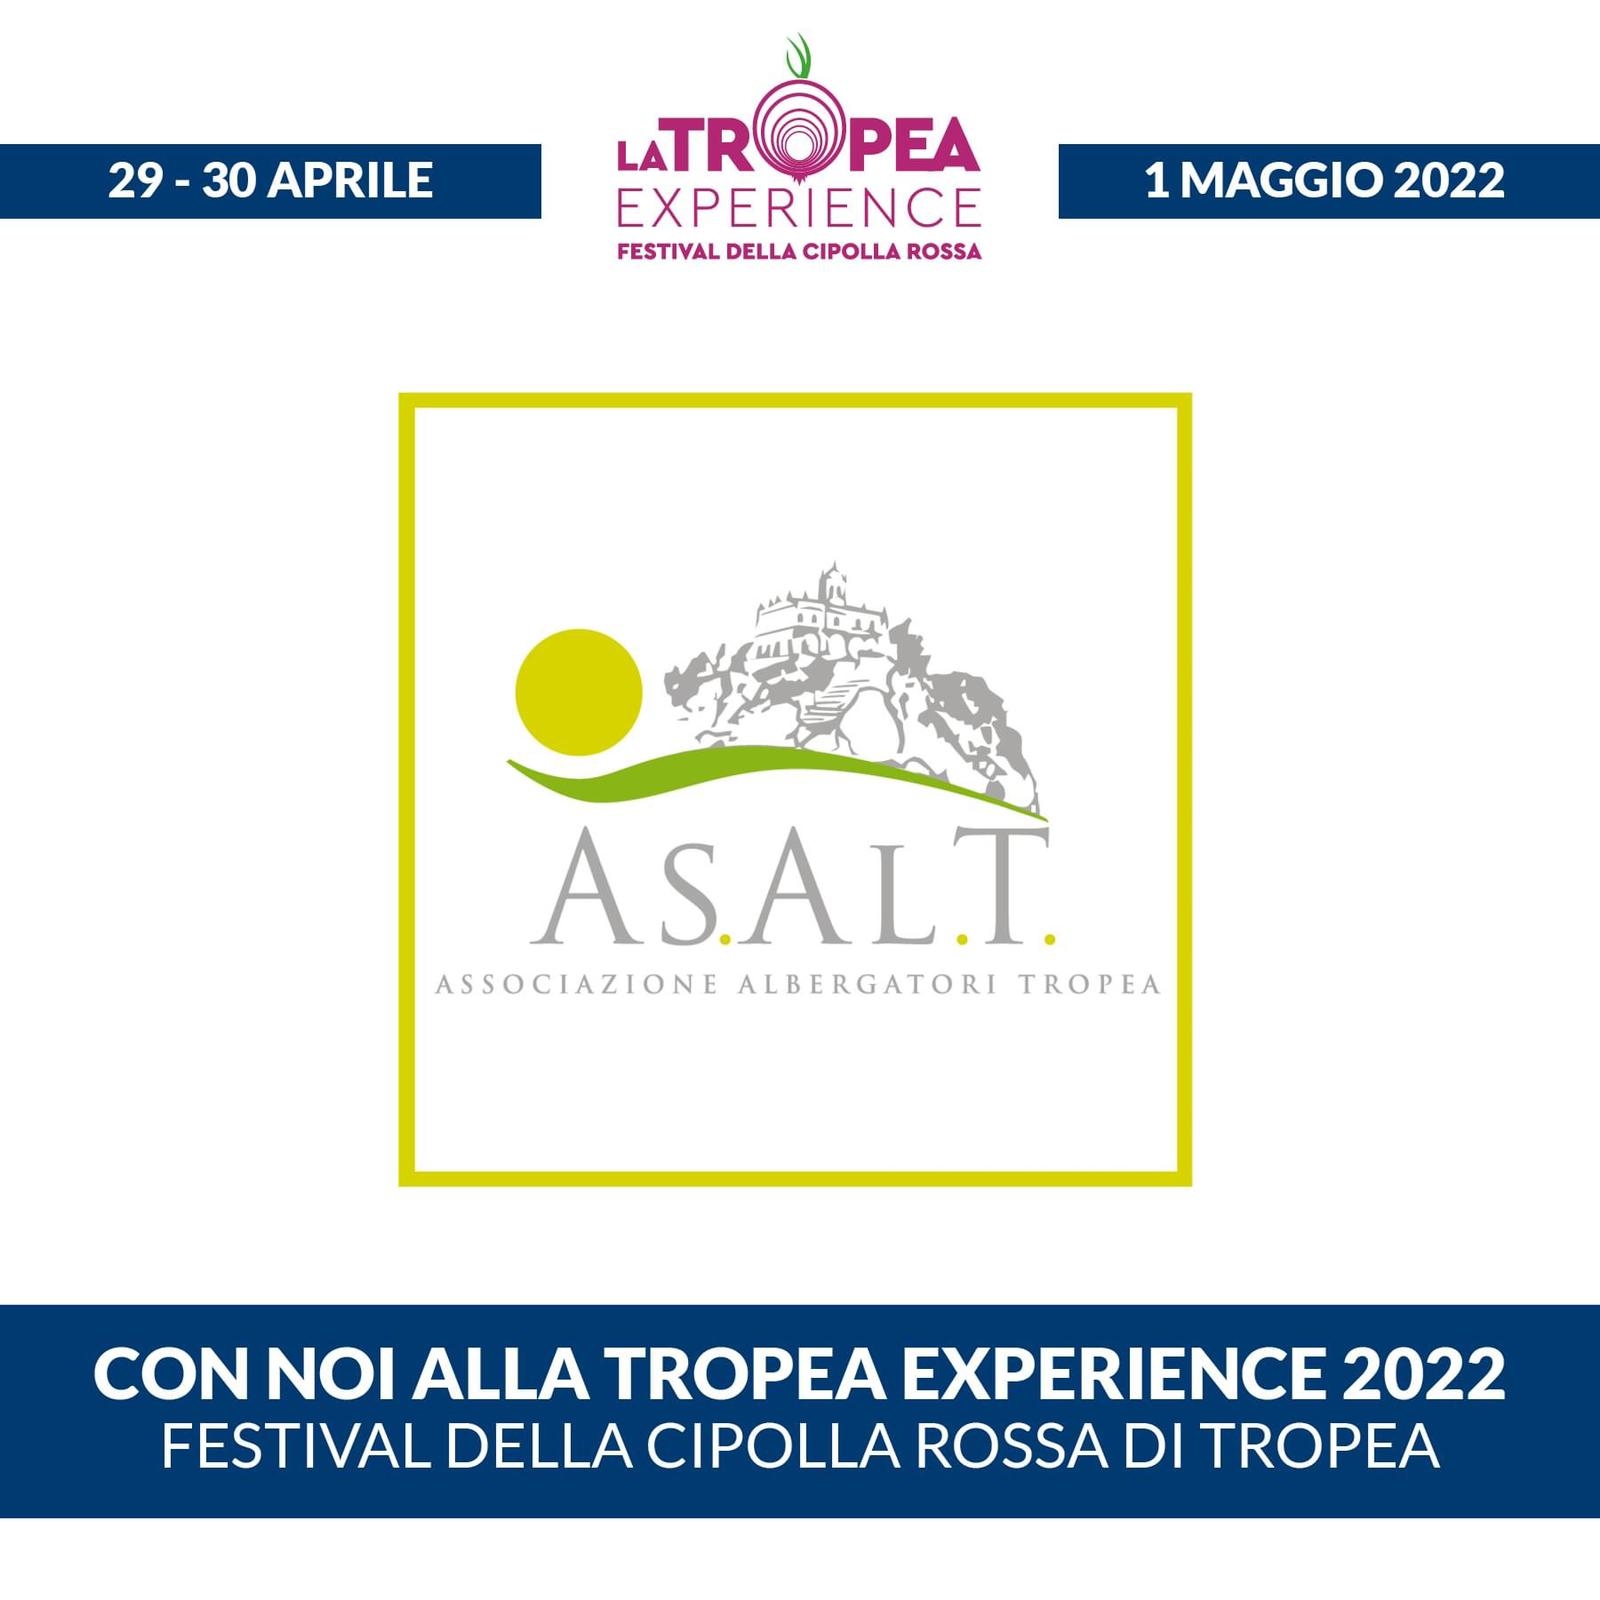 La Tropea Experience - Festival della Cipolla Rossa 2022.